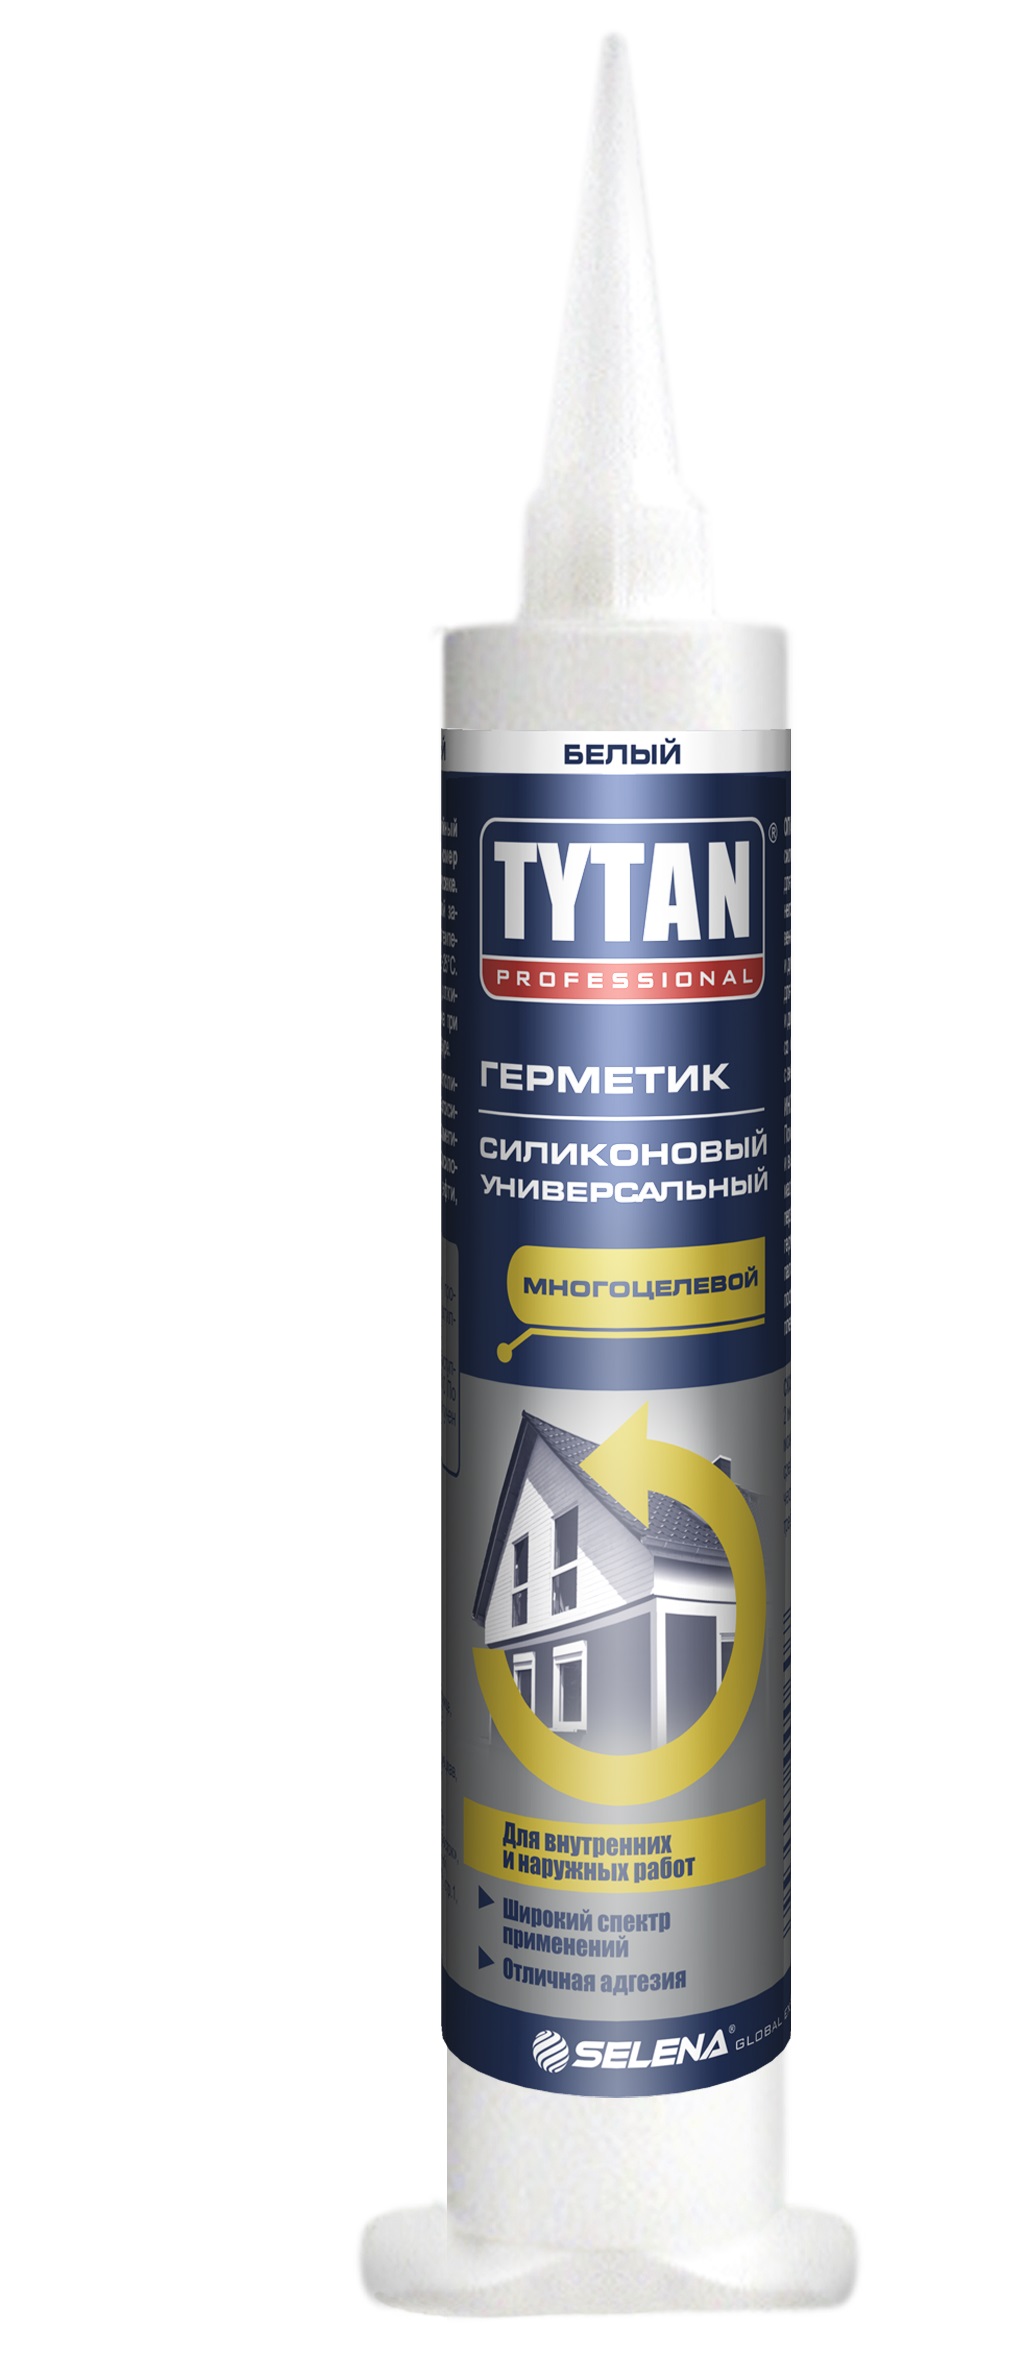 Герметик Tytan professional силиконовый универсальный цвет белый, 80 мл